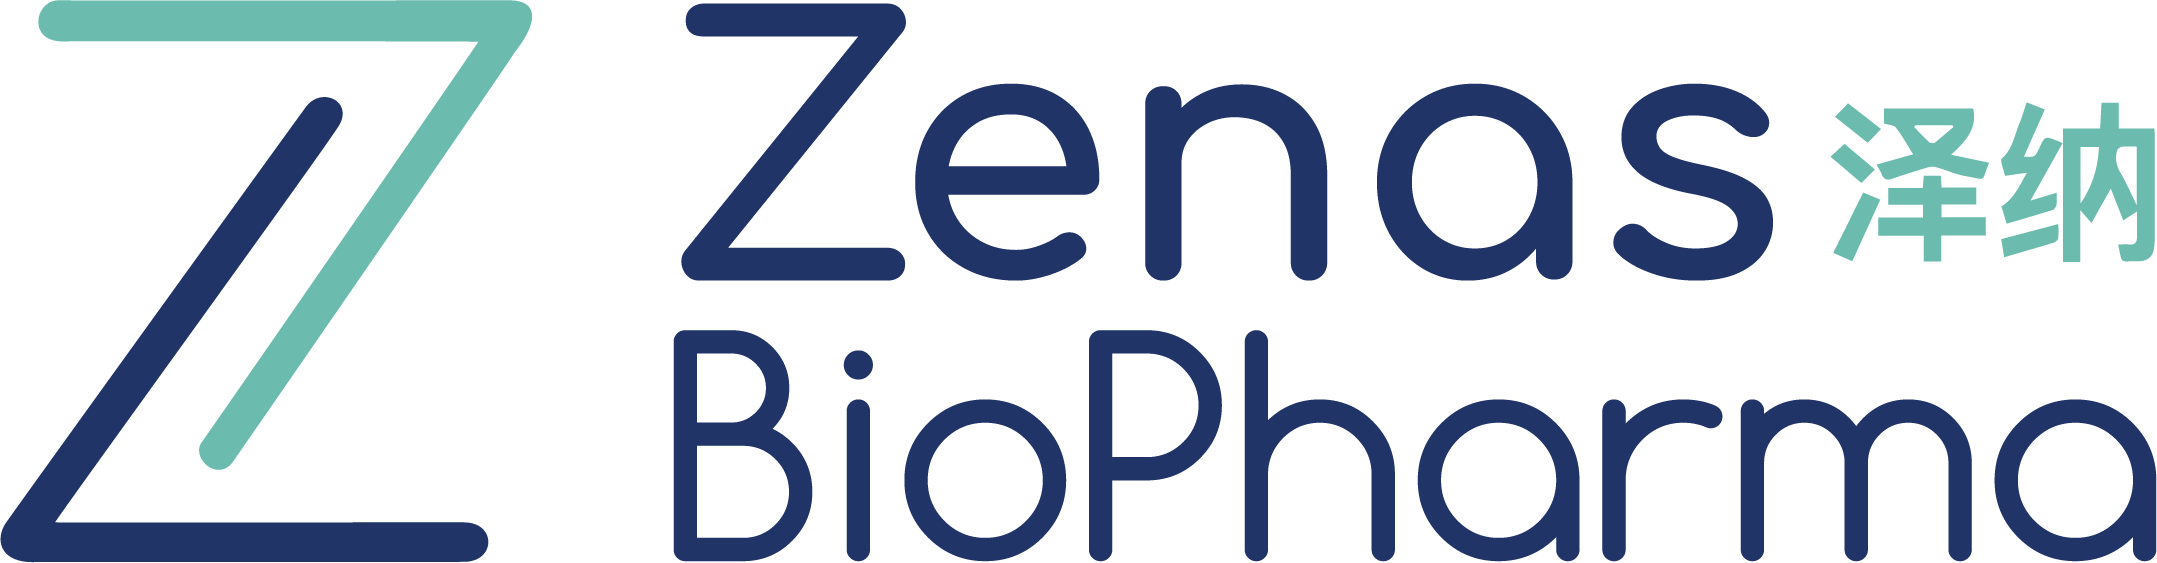 Zenas-logo-rgb.png